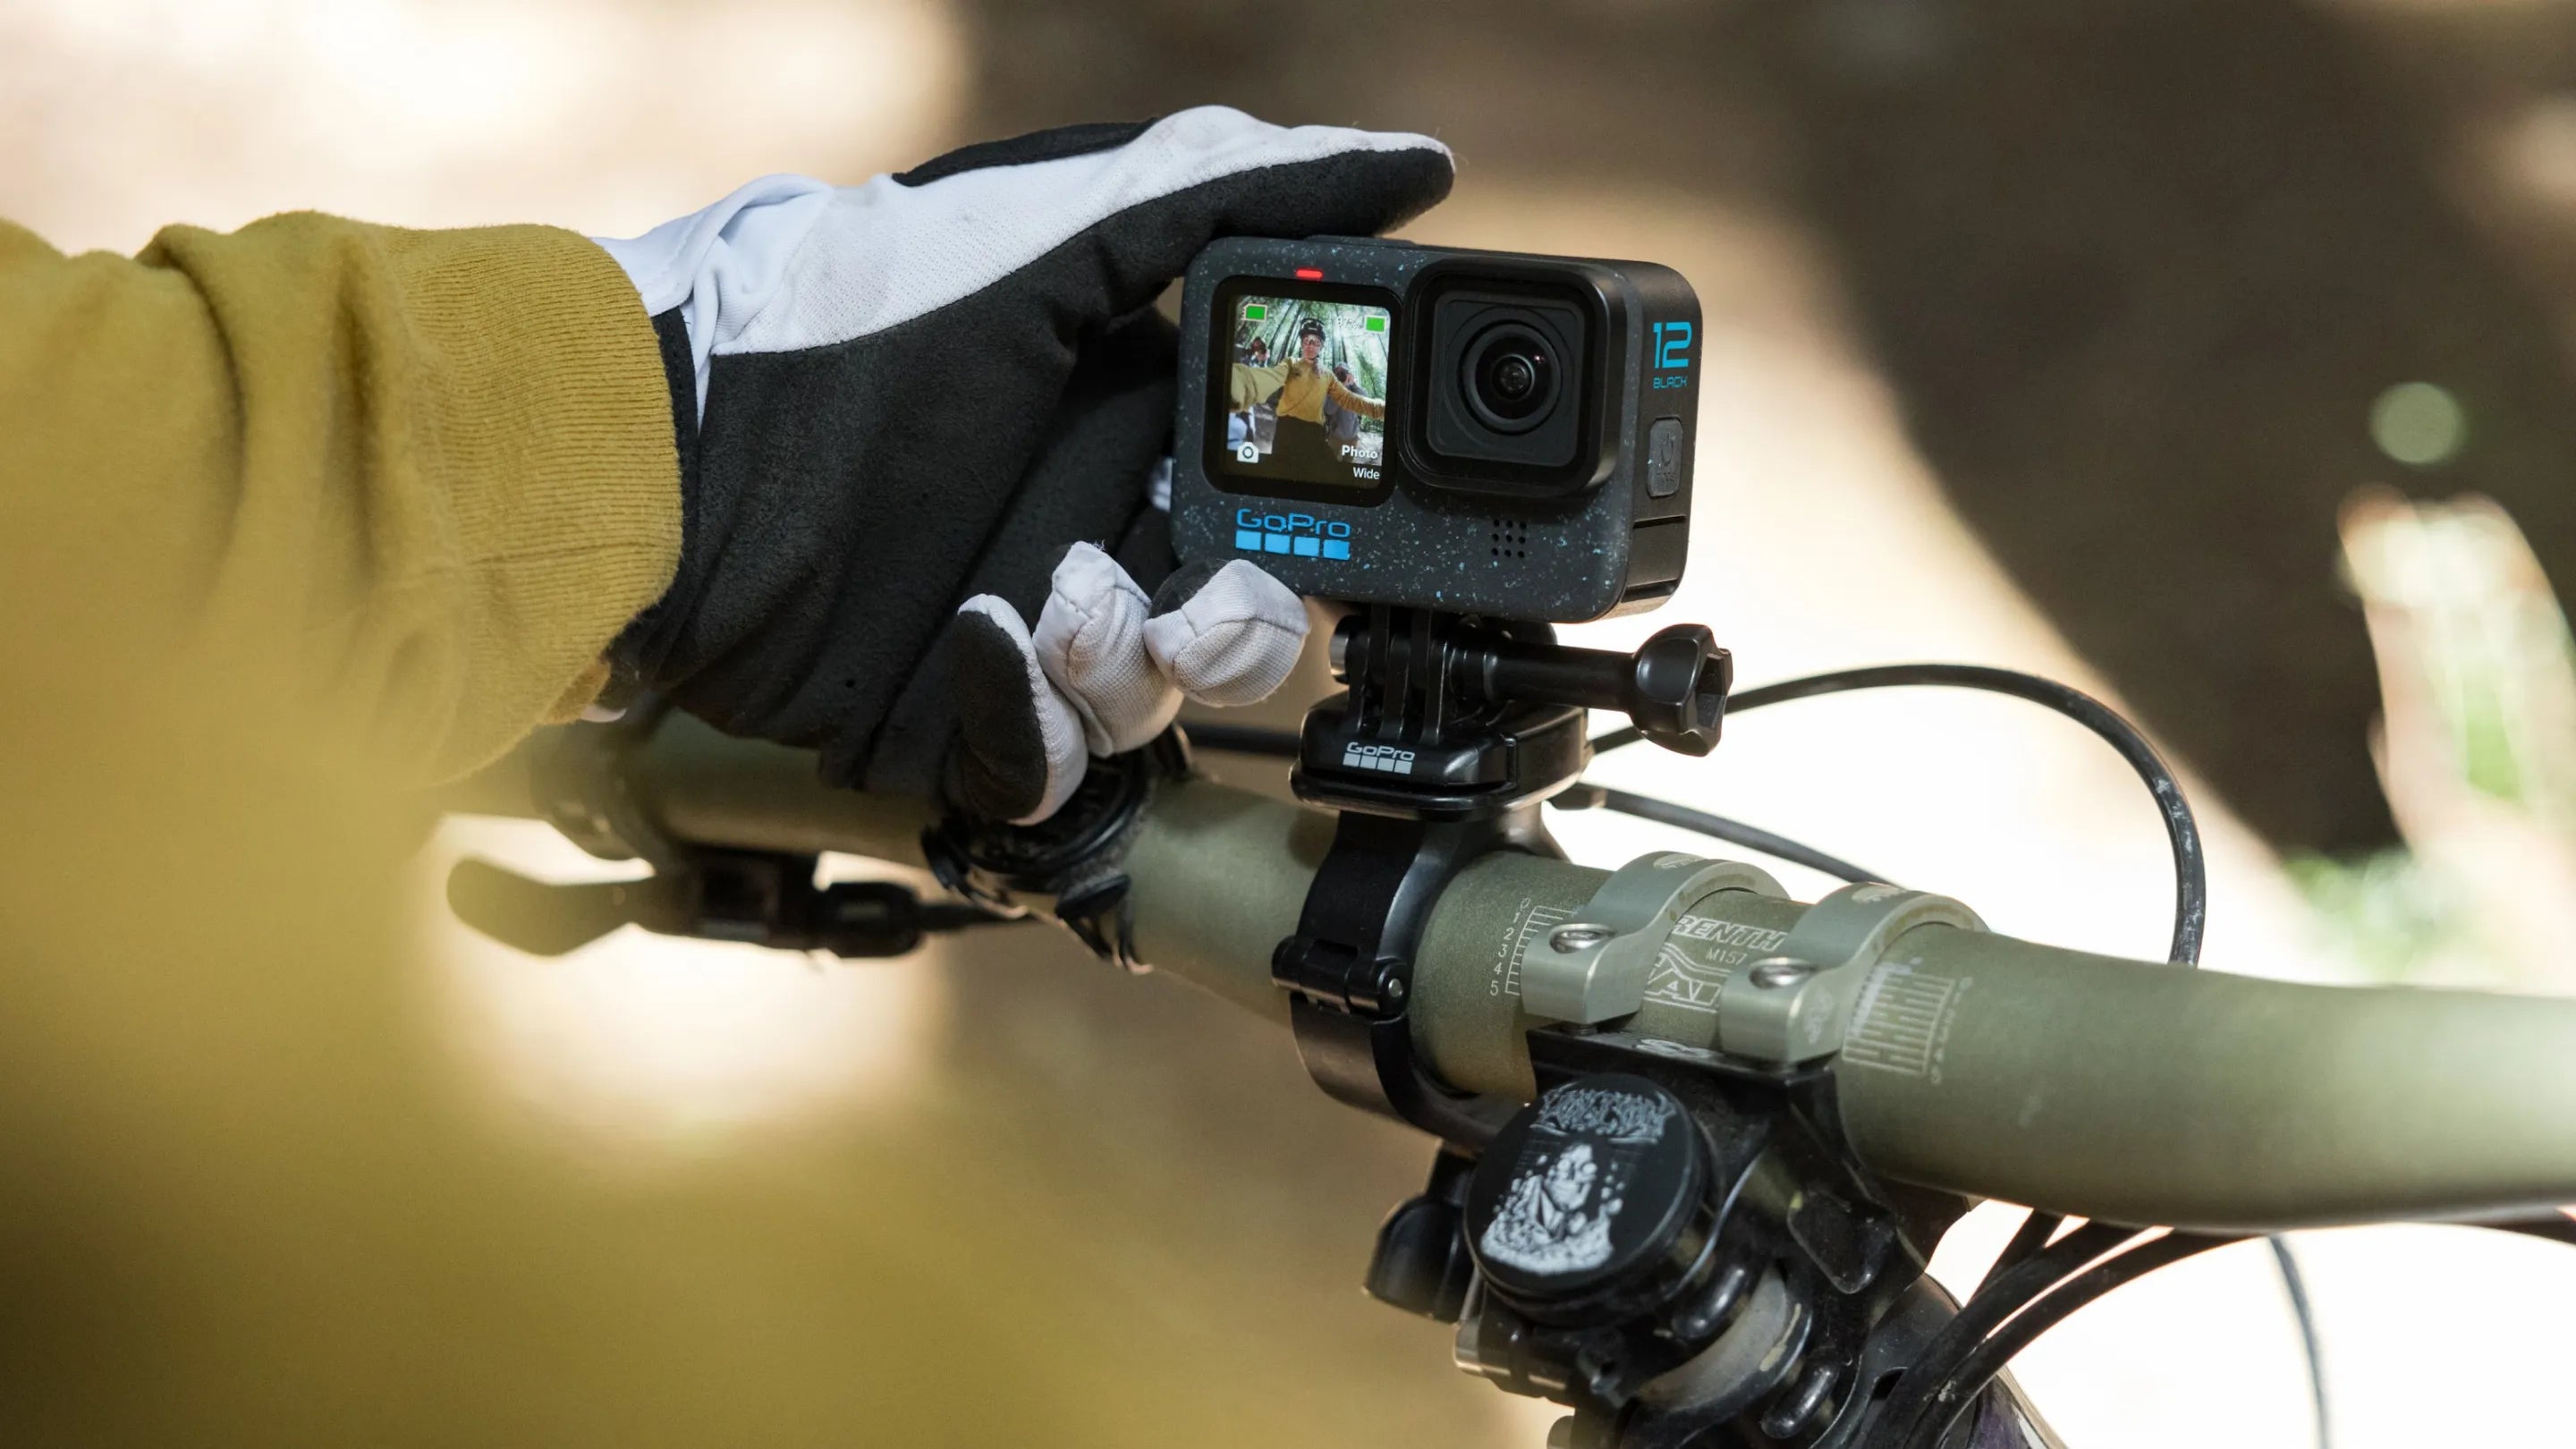 GoPro HERO10 Black Action Camera Specialty Bundle